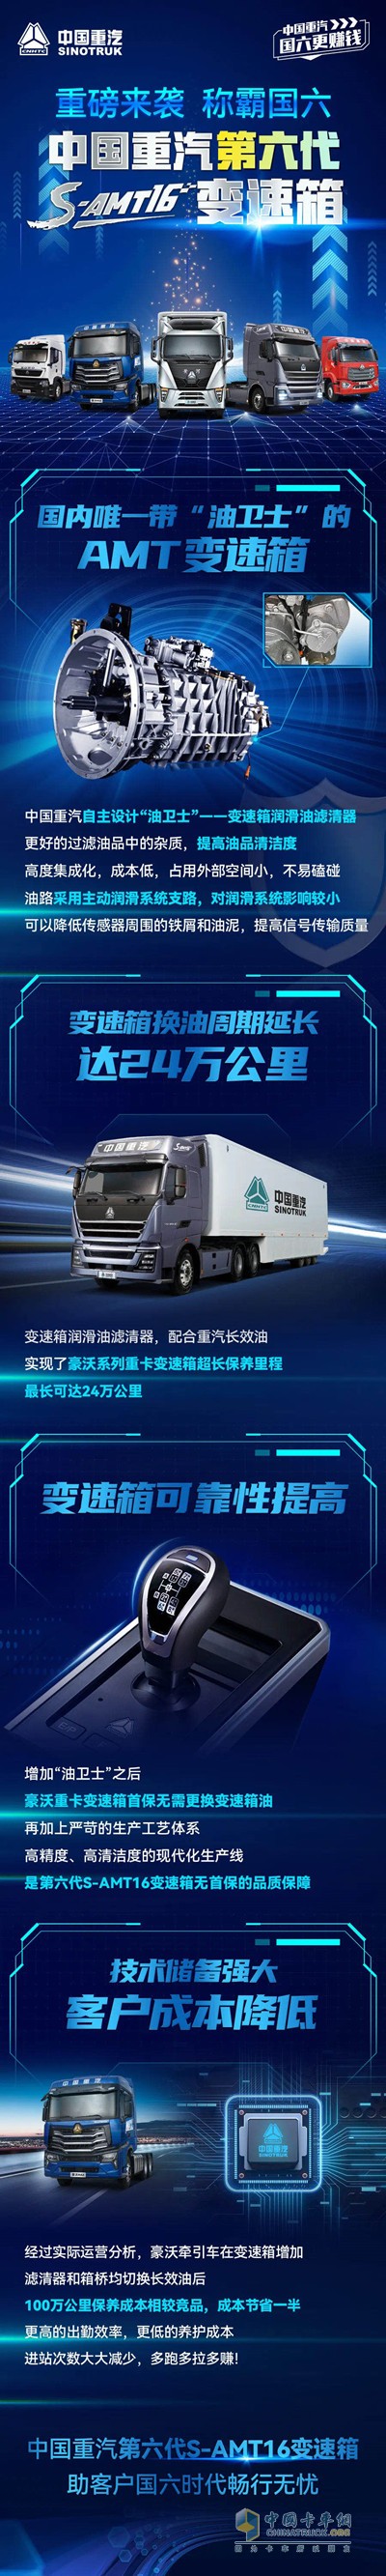 中国重汽第六代S-AMT16变速箱助客户国六时代畅行无忧